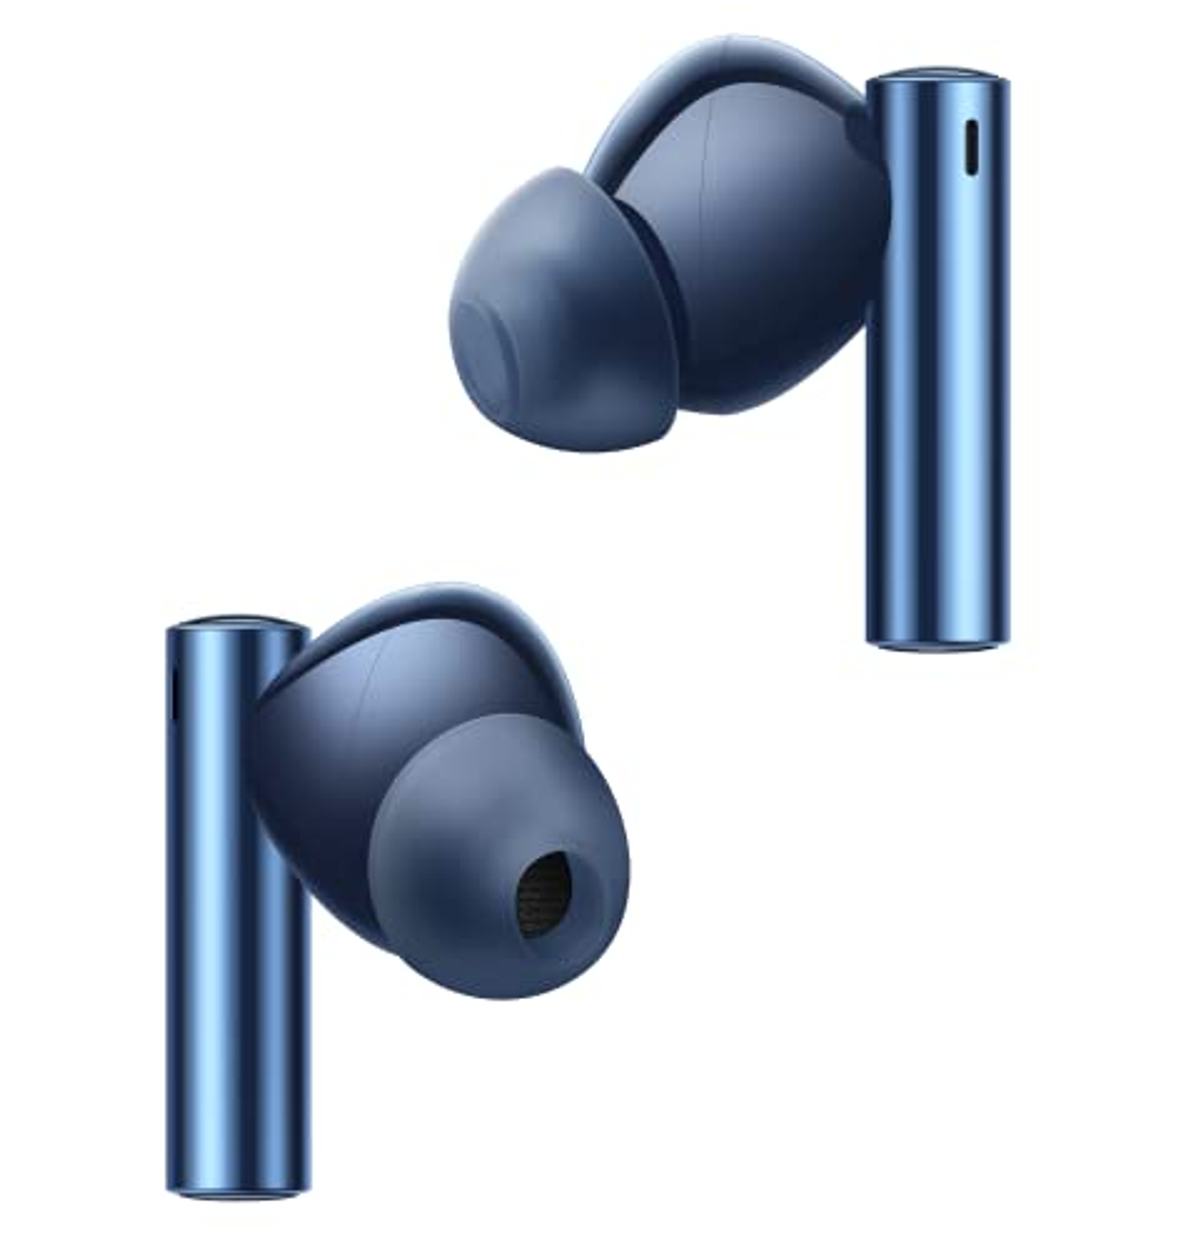 REALME Buds Blau Air Bluetooth 3, Bluetooth In-ear Kopfhörer